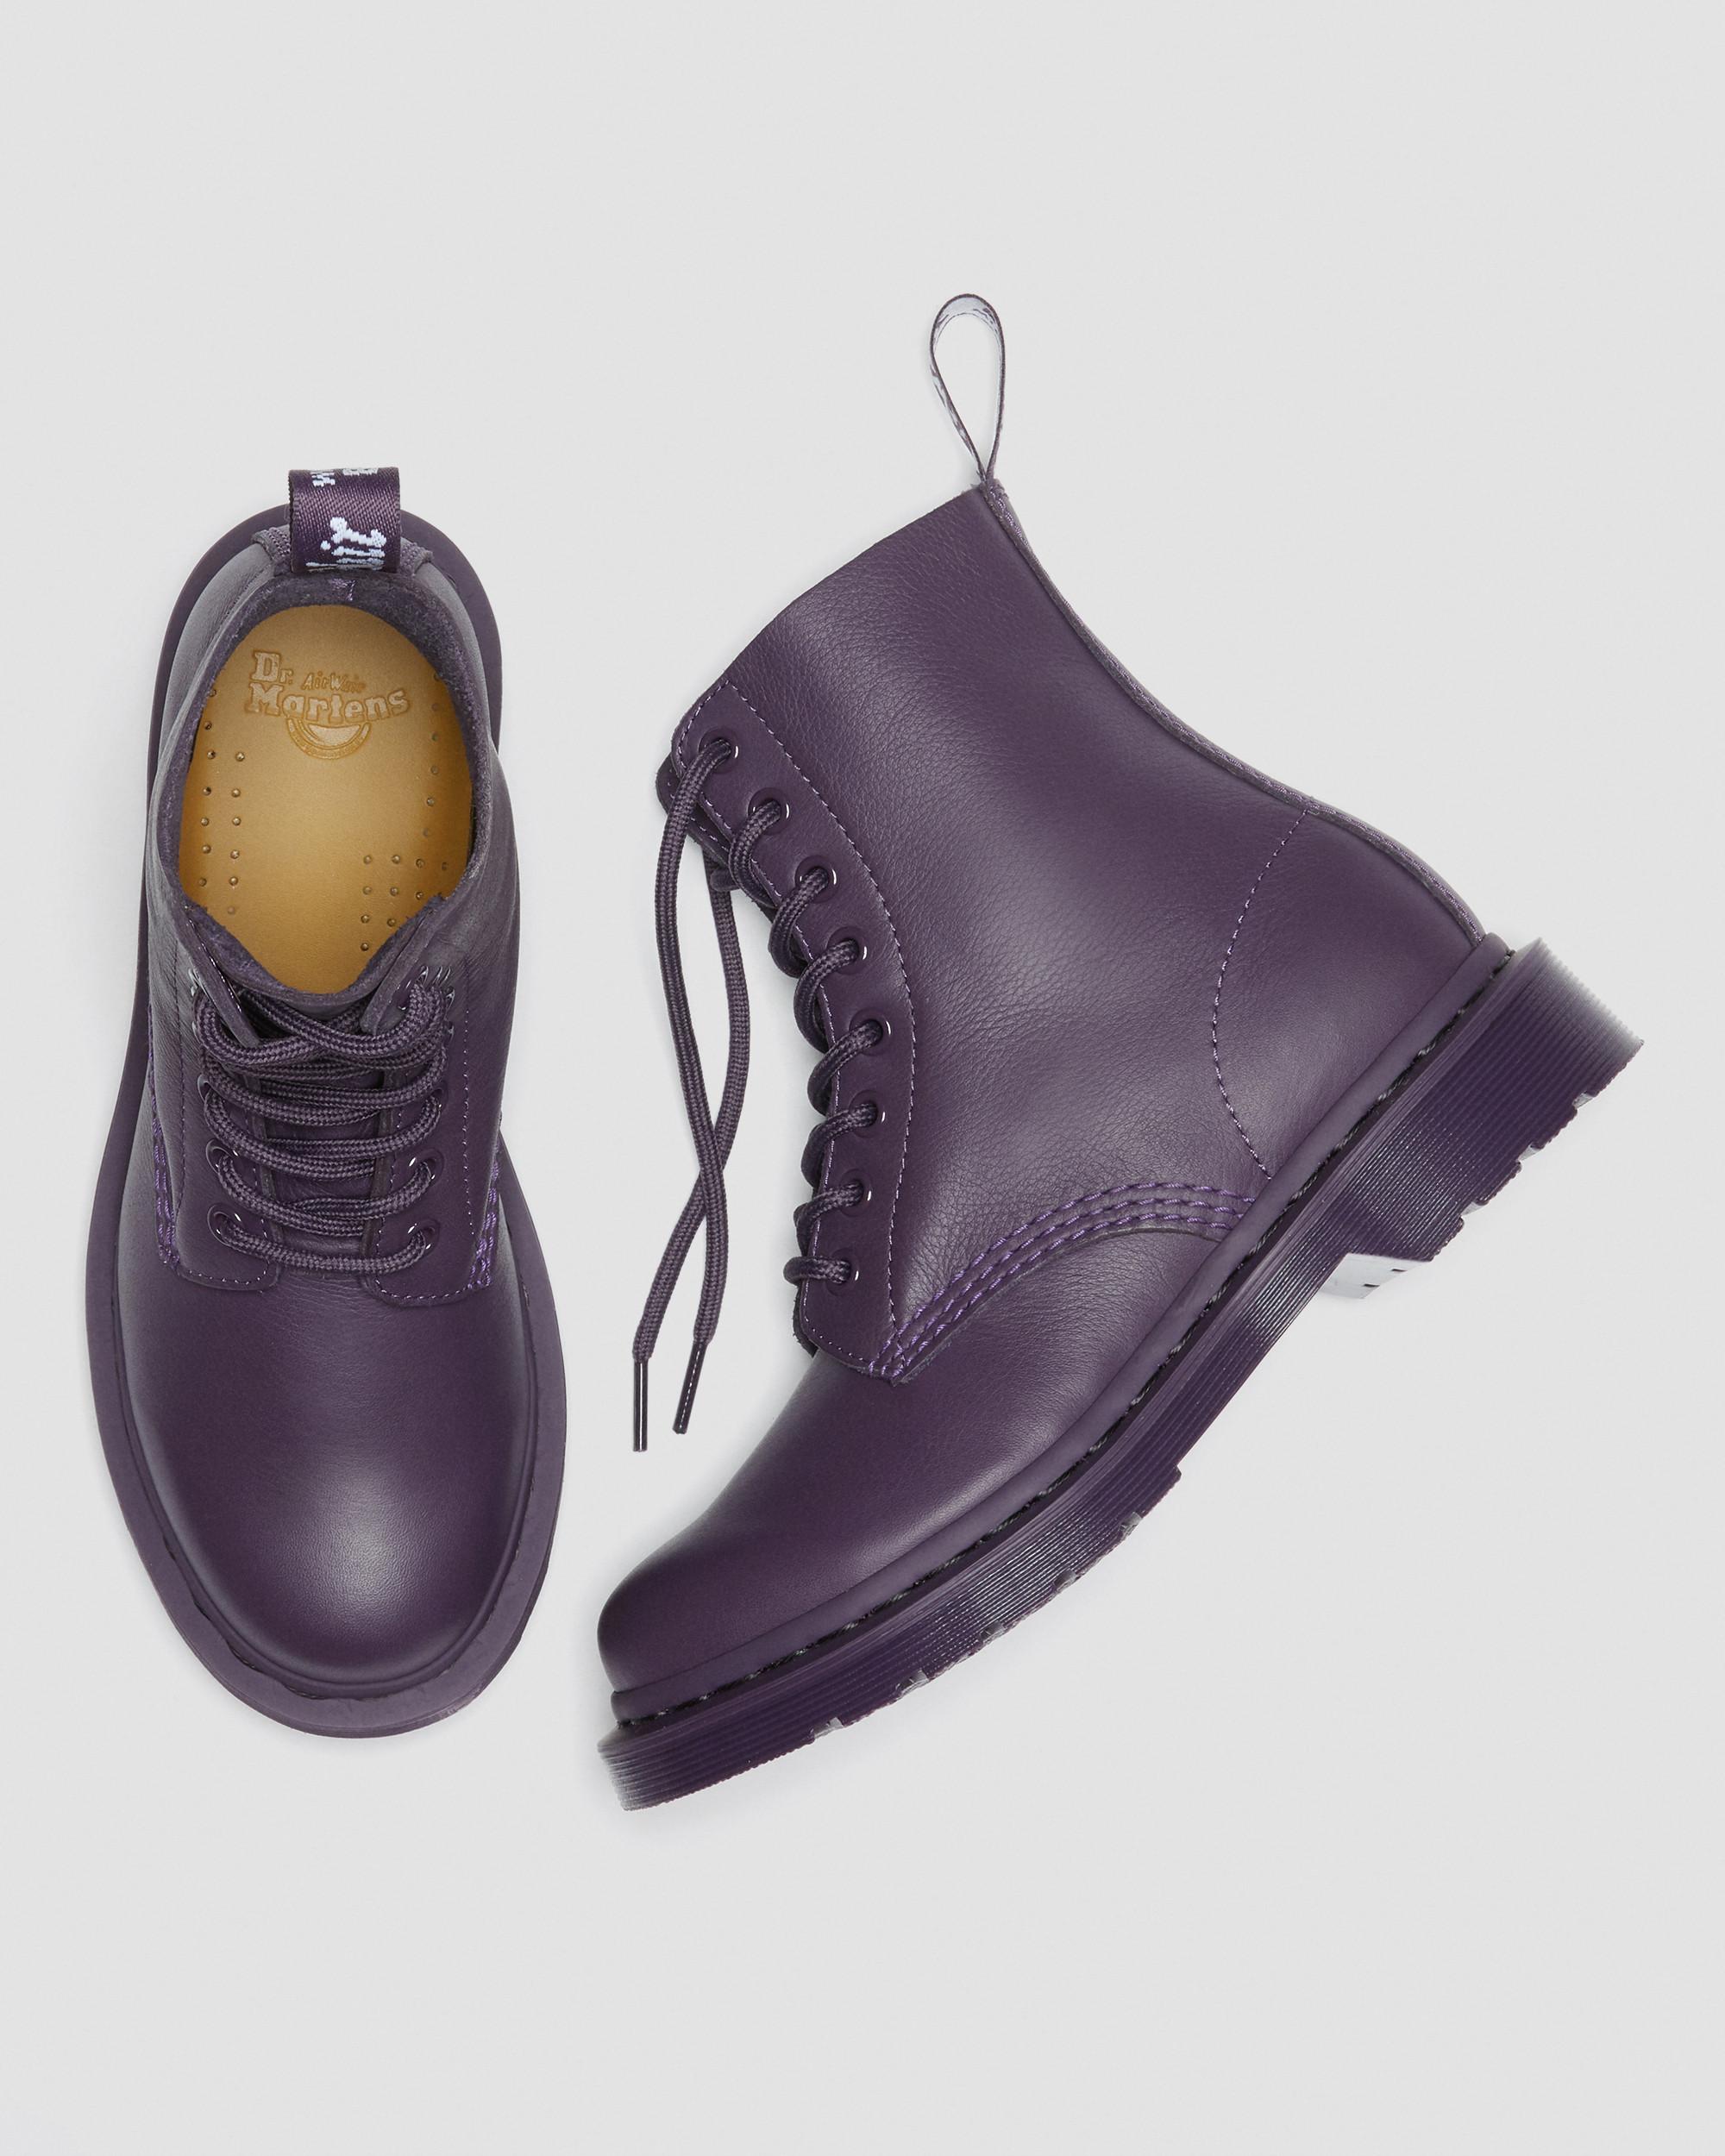 Lisse Cuir Boots Plateformes Jadon Betty Boop Dr Homme Chaussures Bottes Bottes habillées Martens pour homme en coloris Noir 